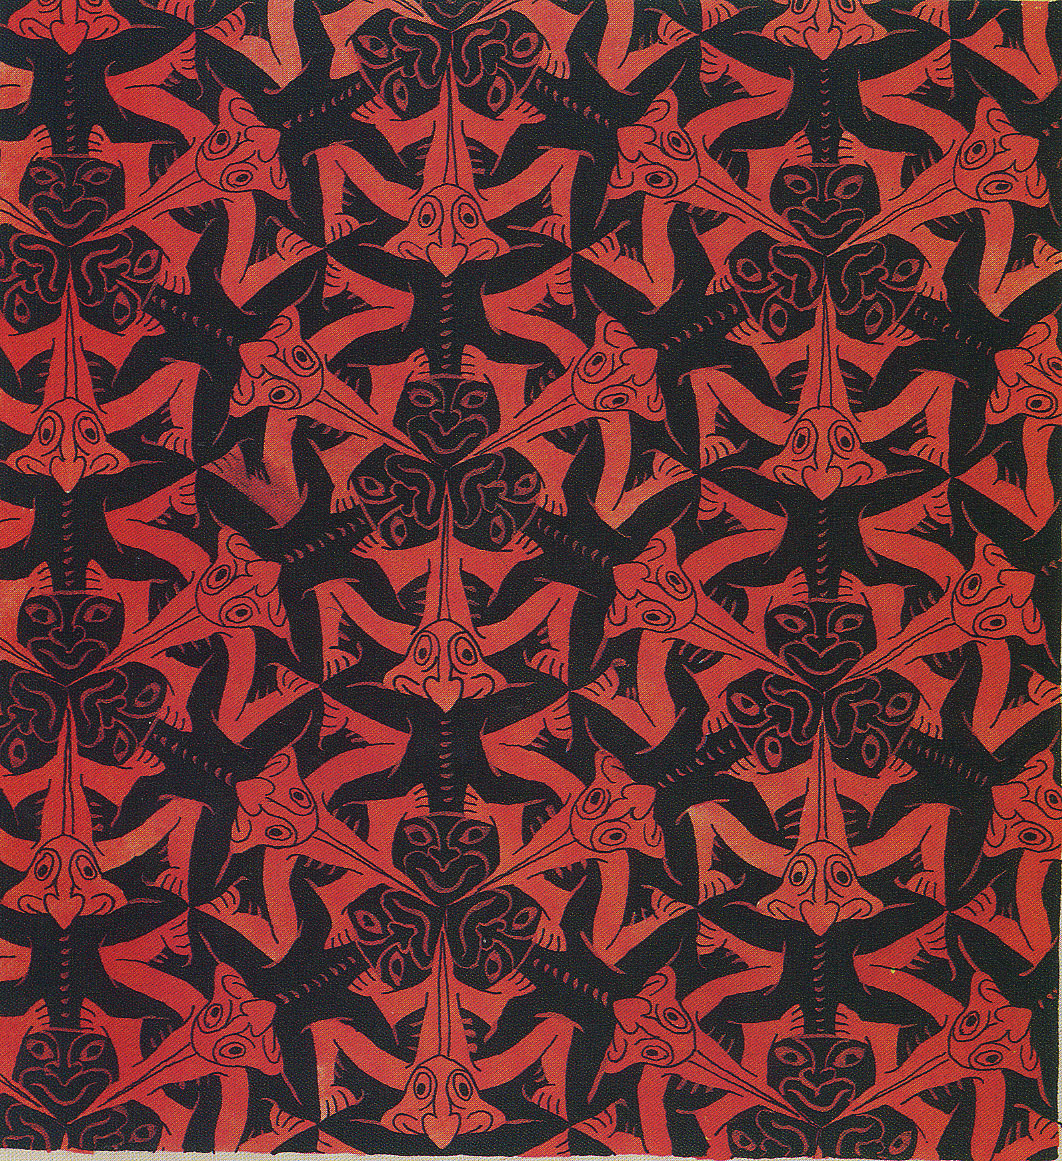 Escher's symmetry prints from M.C. Escher Official website